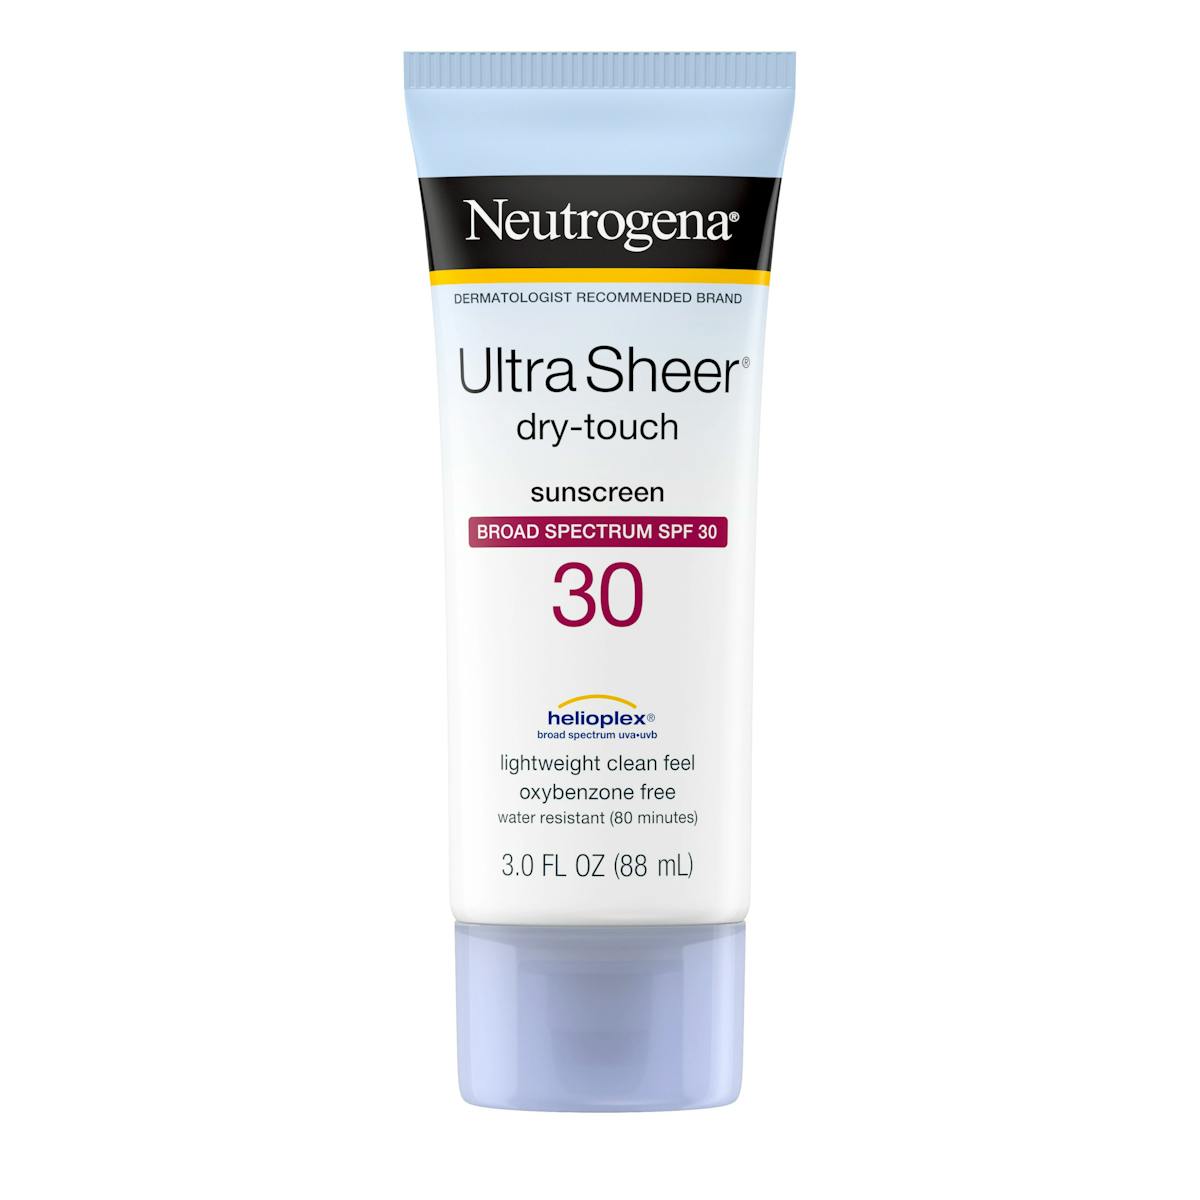 Neutrogena Ultra Sheer Face Sunscreen SPF 60 Review